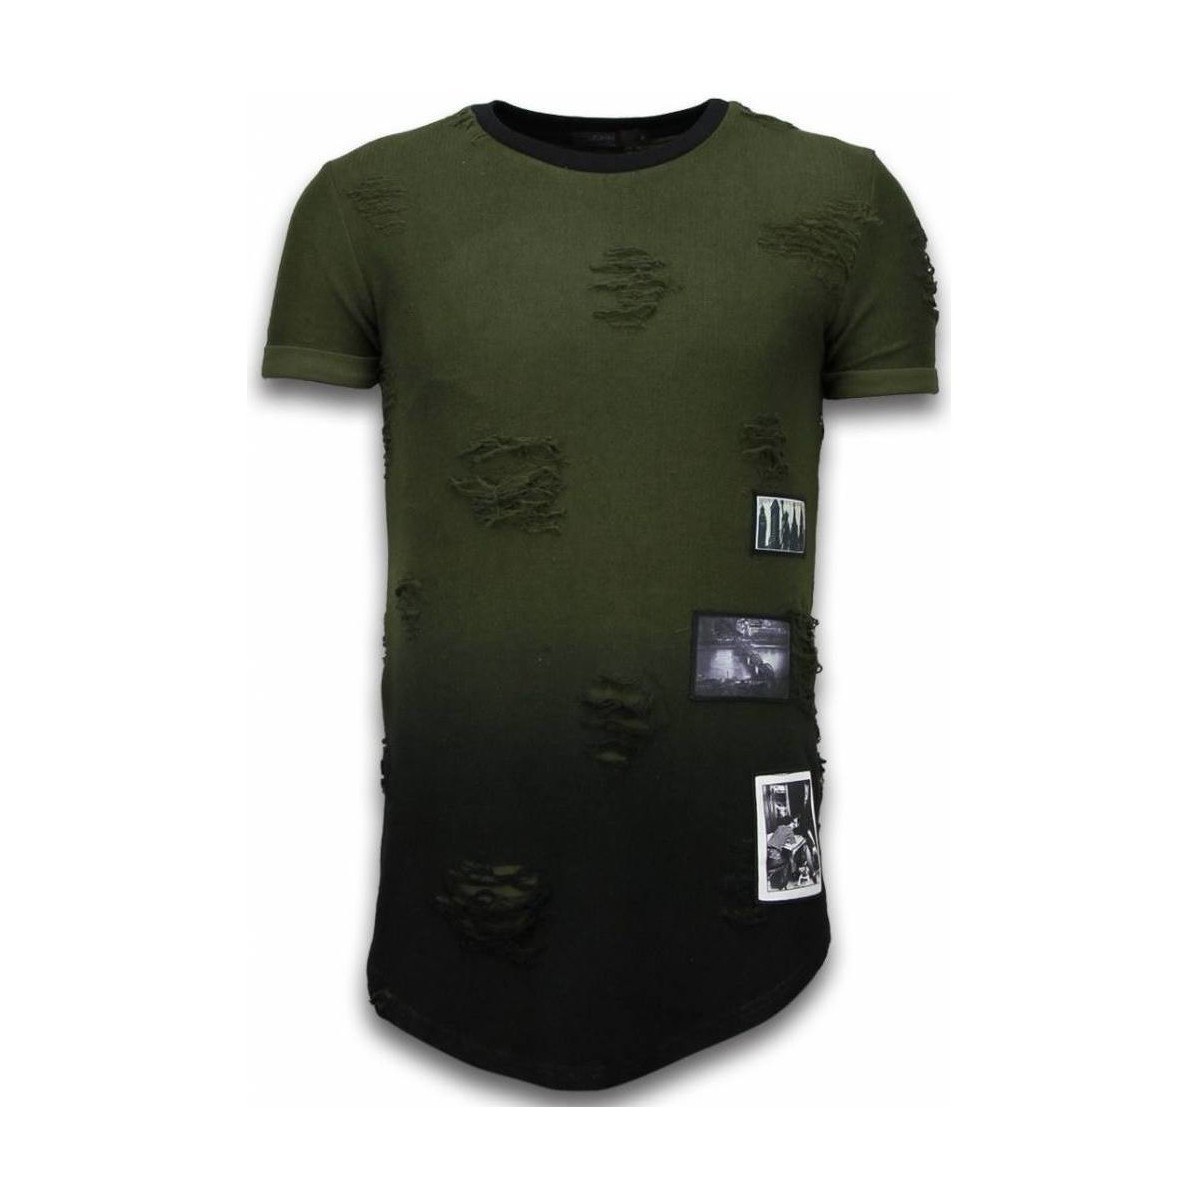 tekstylia Męskie T-shirty z krótkim rękawem Justing 46494920 Zielony